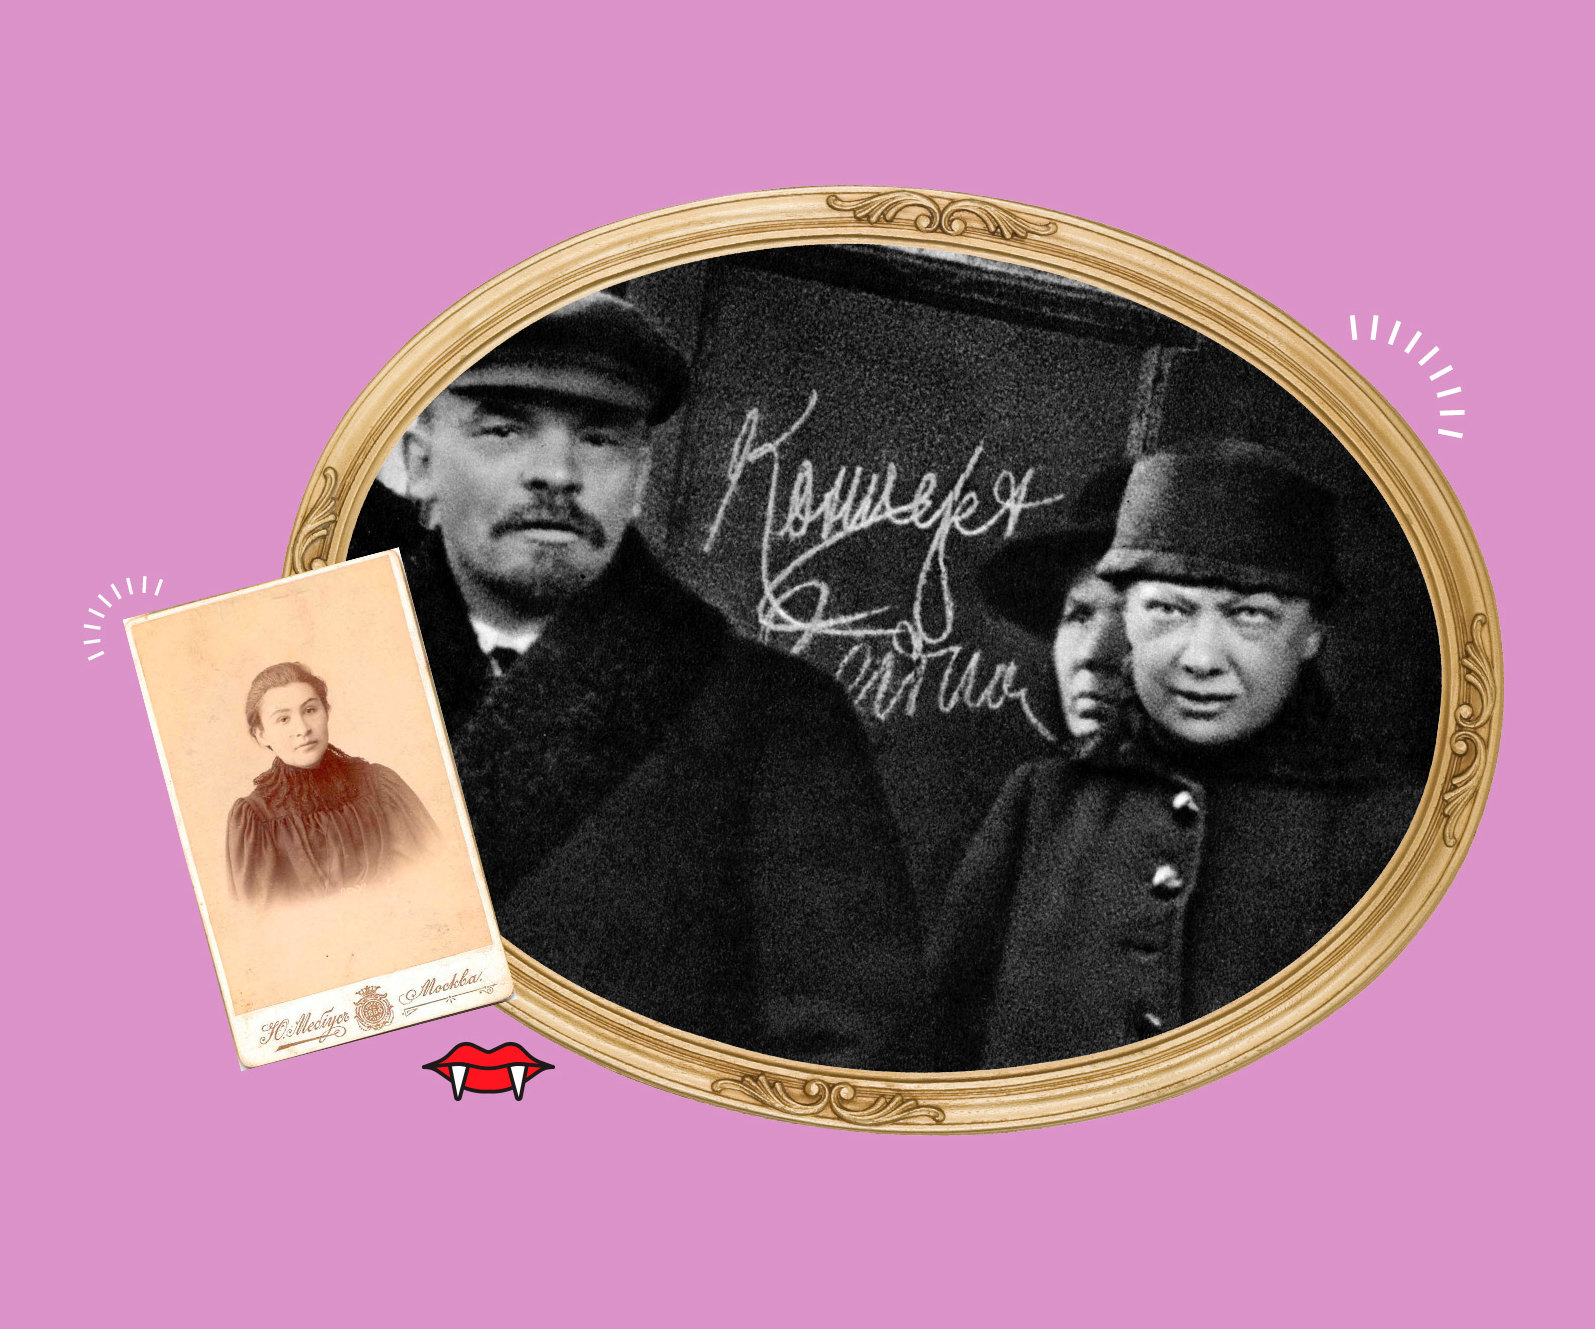 Любовный треугольник Ленина: как неприметная Крупская увела Ильича у красотки Якубовой